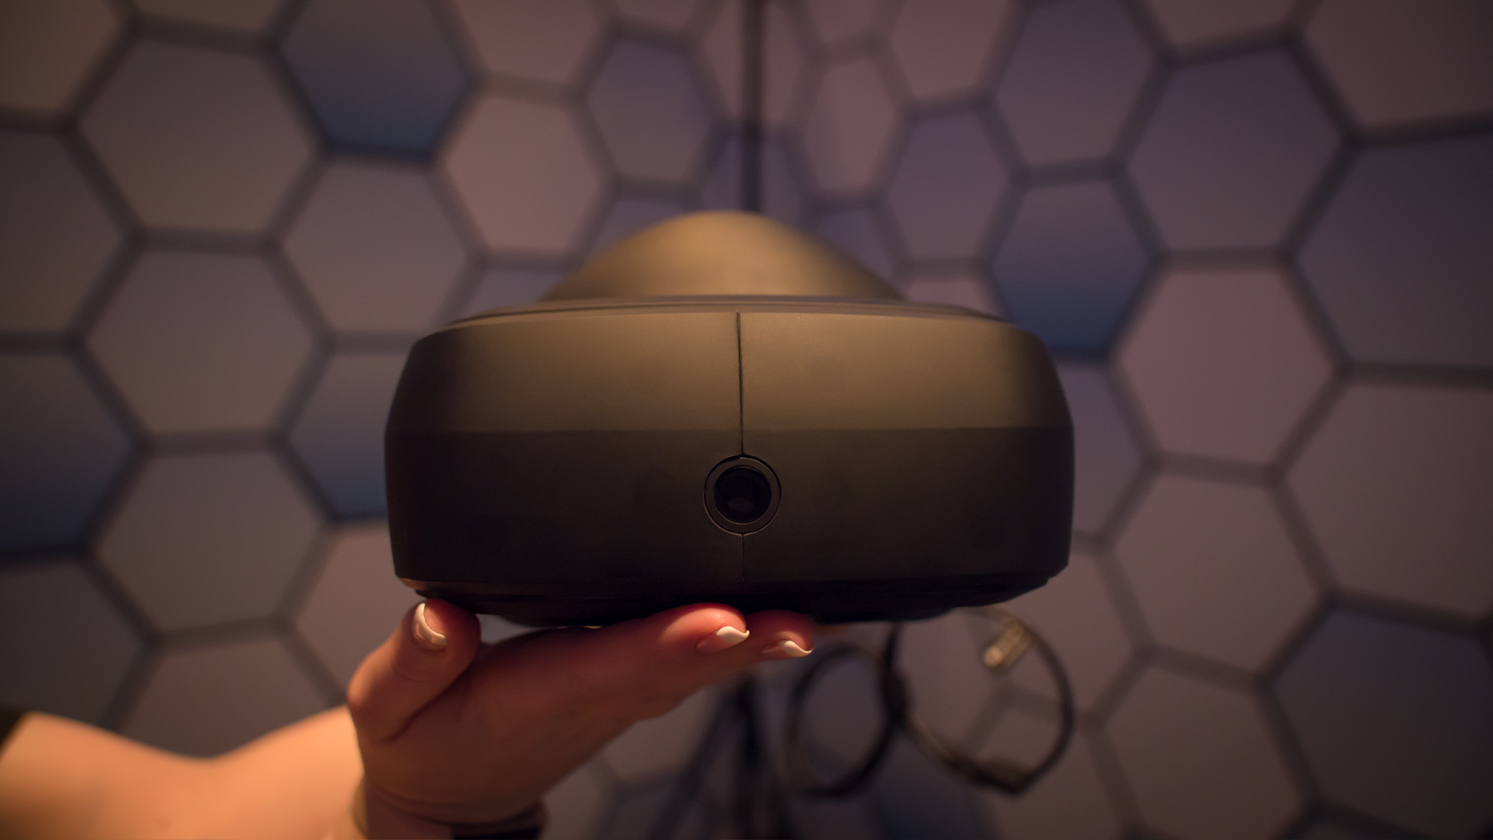 Immagine pubblicata in relazione al seguente contenuto: Virtual Reality: LG e Valve mostrano un prototipo dell'headset SteamVR | Nome immagine: news25910_LG-Valve-Steam-VR_1.jpg